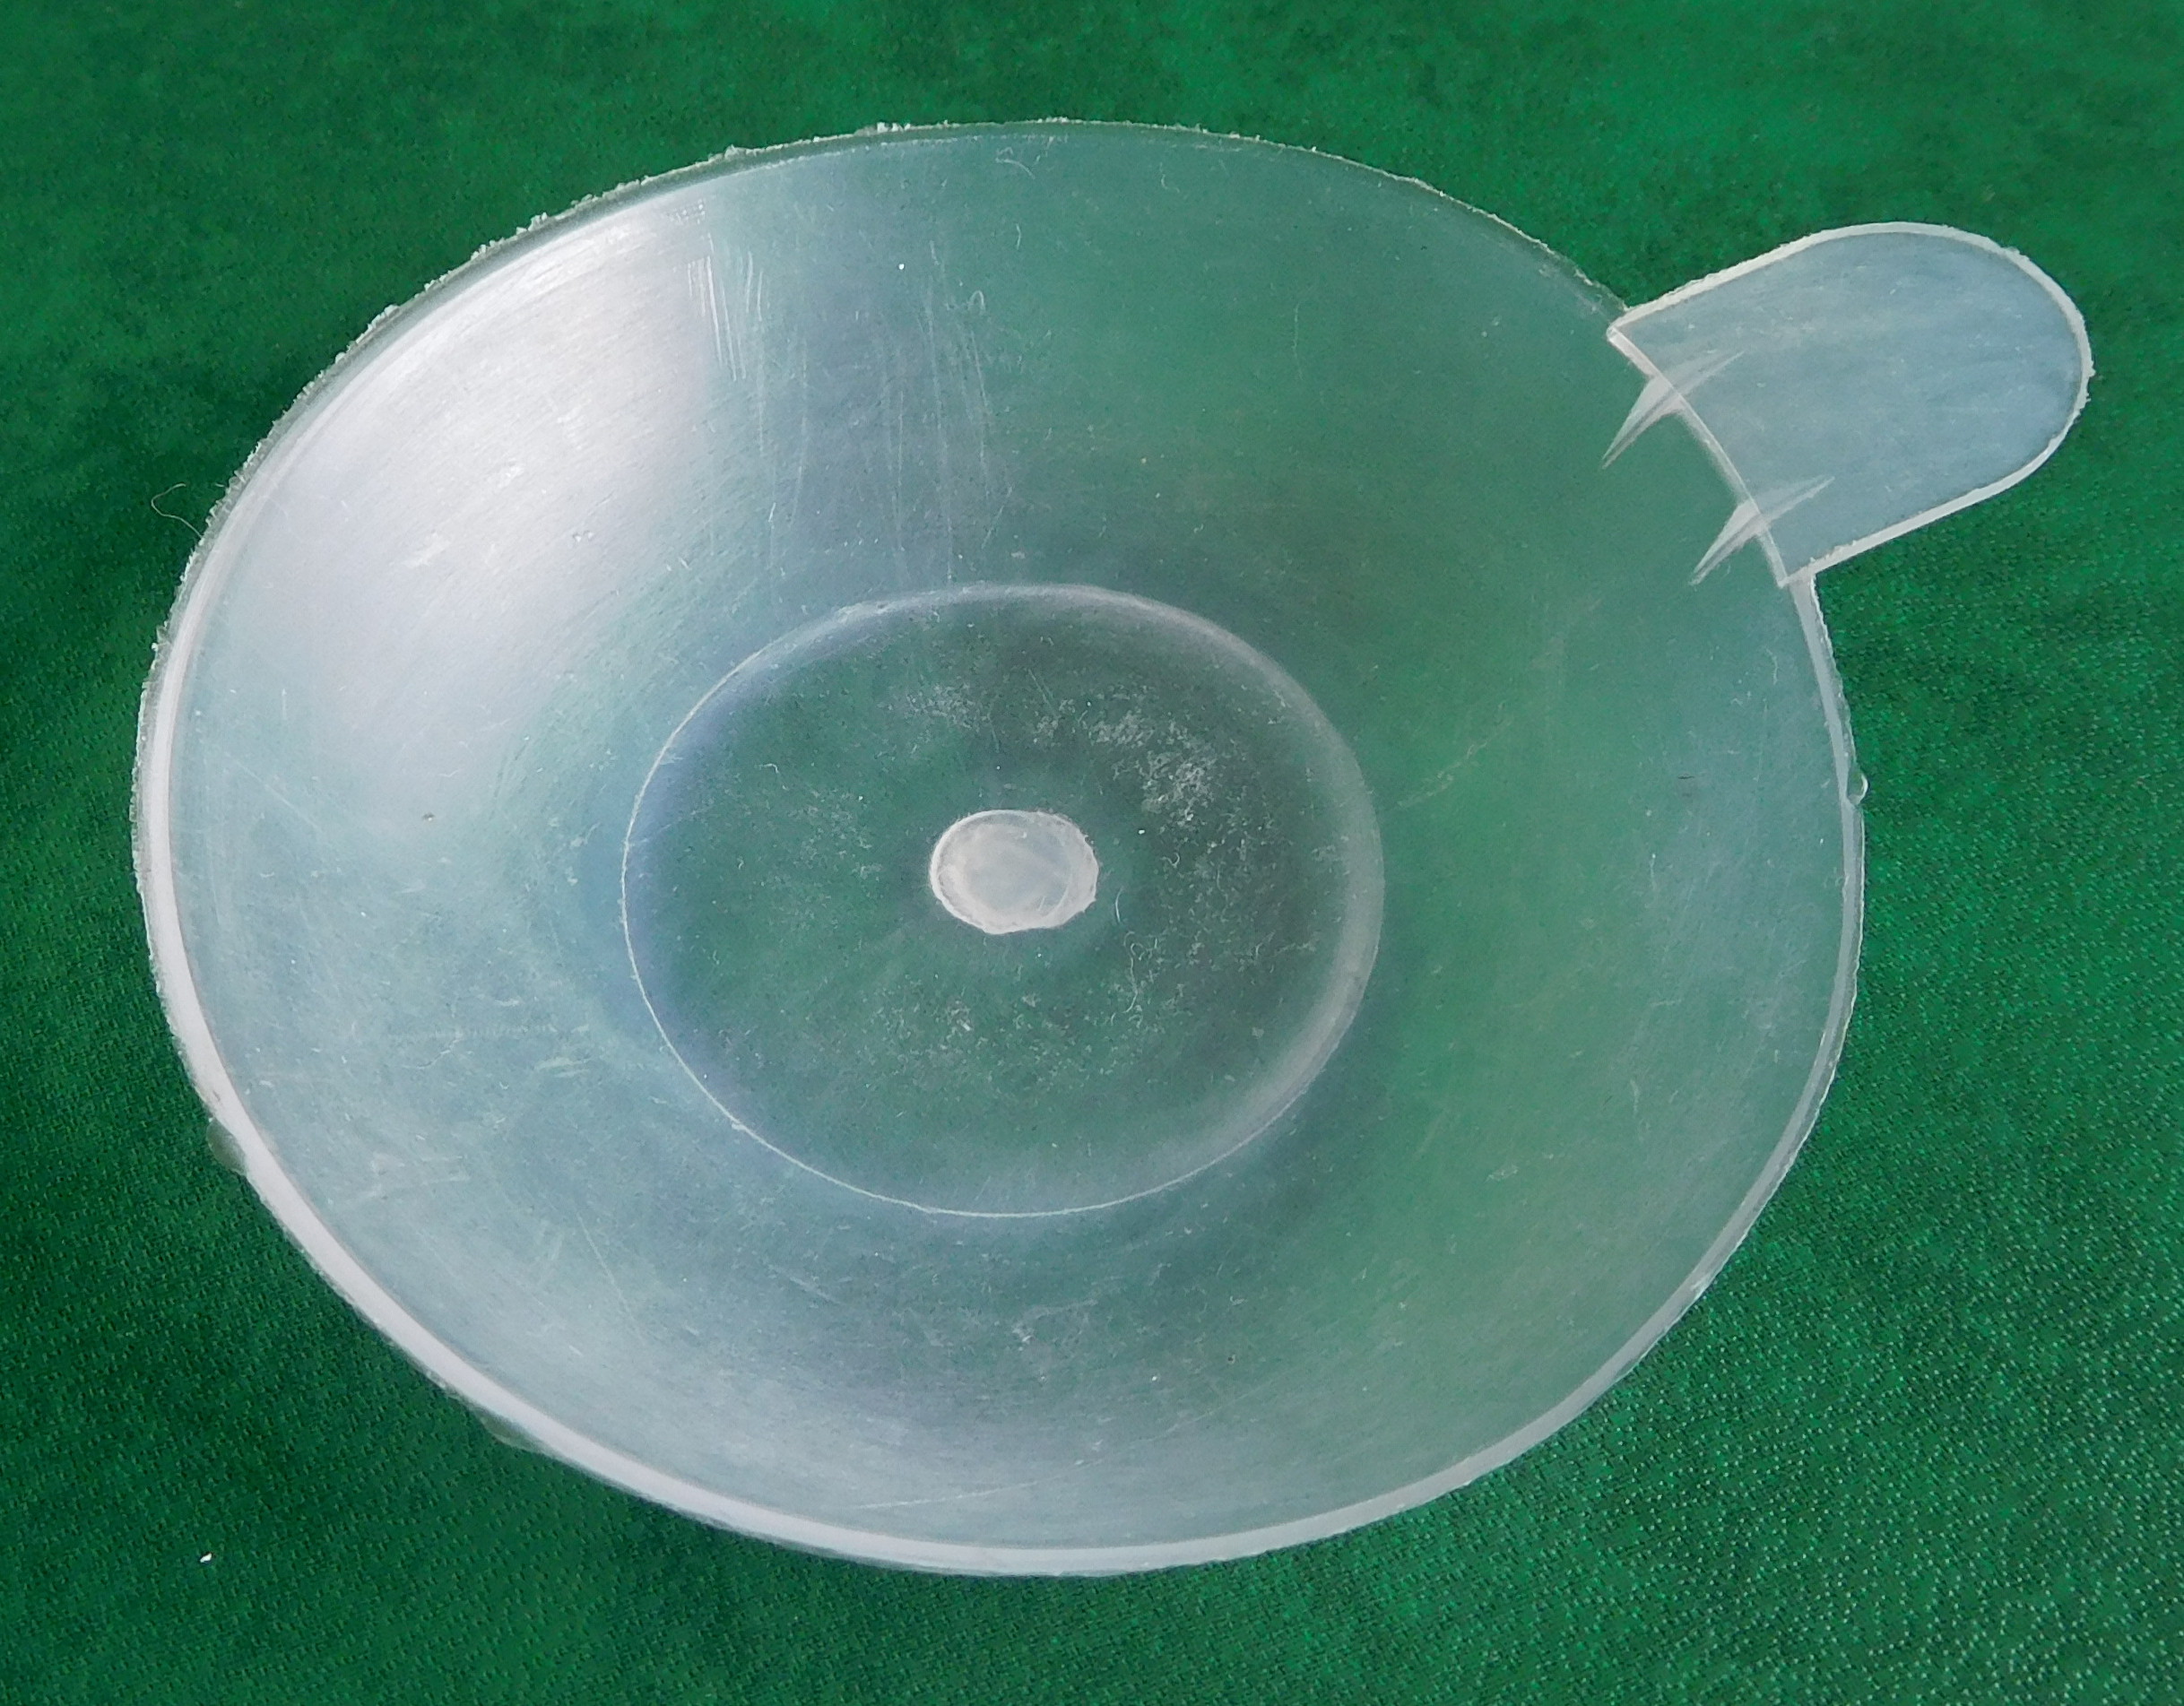 File:Coupelle en plastique.jpg - Wikimedia Commons